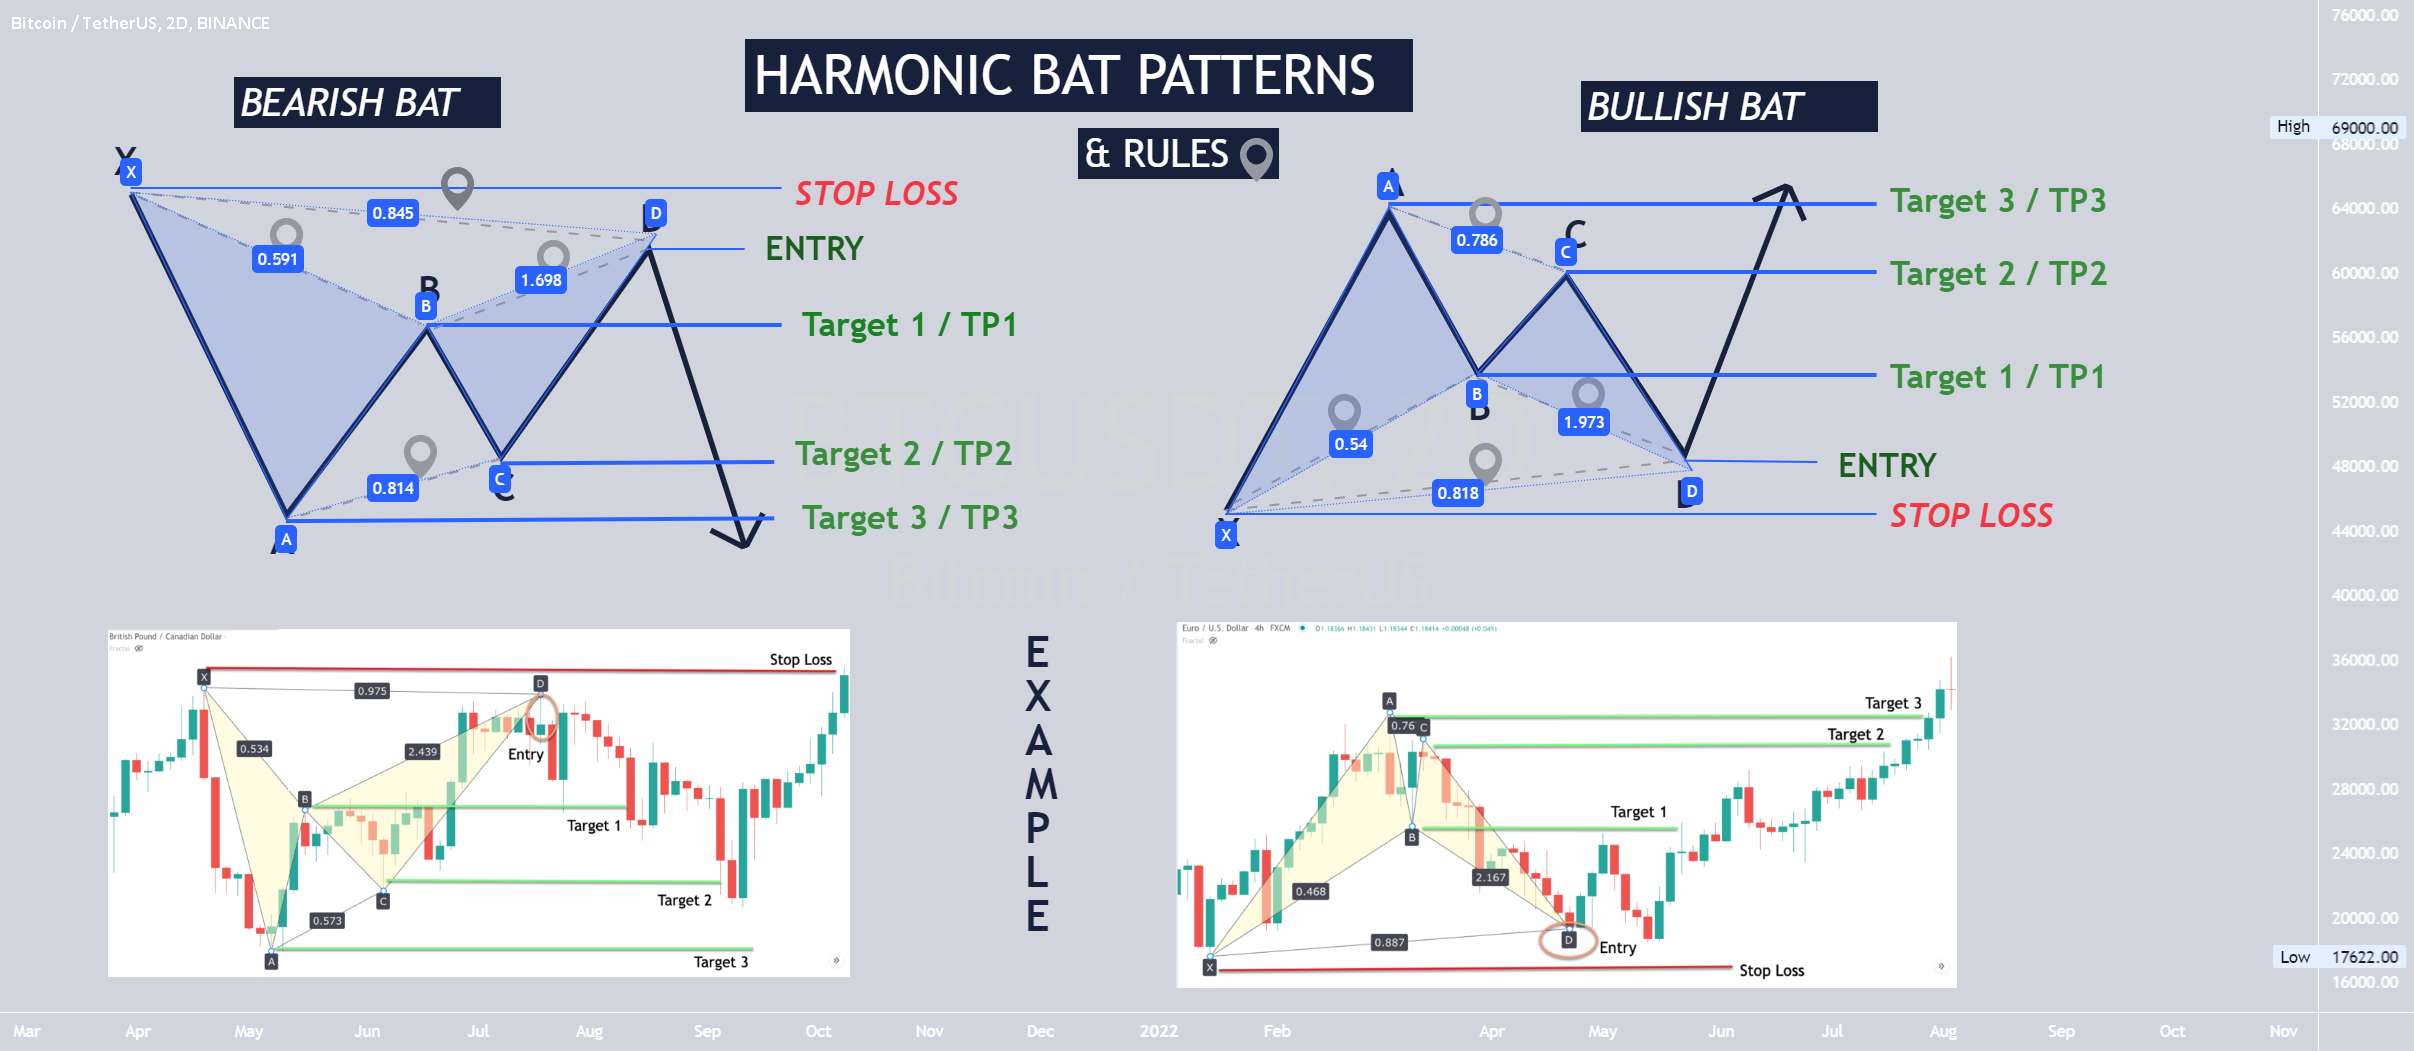 Crypto 101 - Trading Harmonic Bats 🦇 - GMX USDT -BULLISH Harmonic Bat🦇 +30% TO